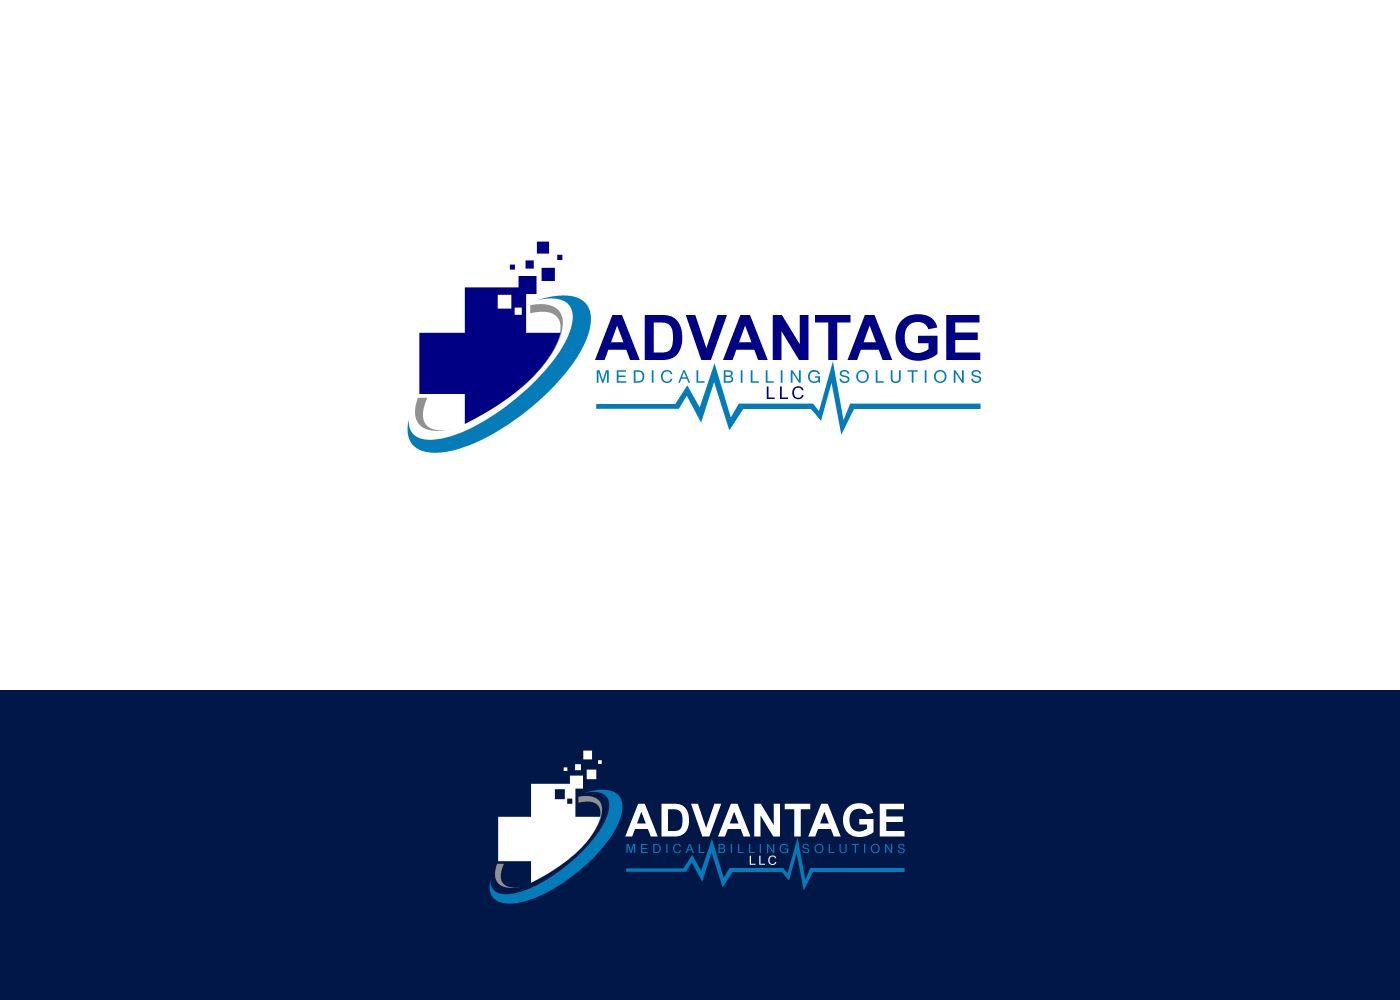 Medical Billing Logo - Medical Logo Design for Advantage Medical Billing Solutions or